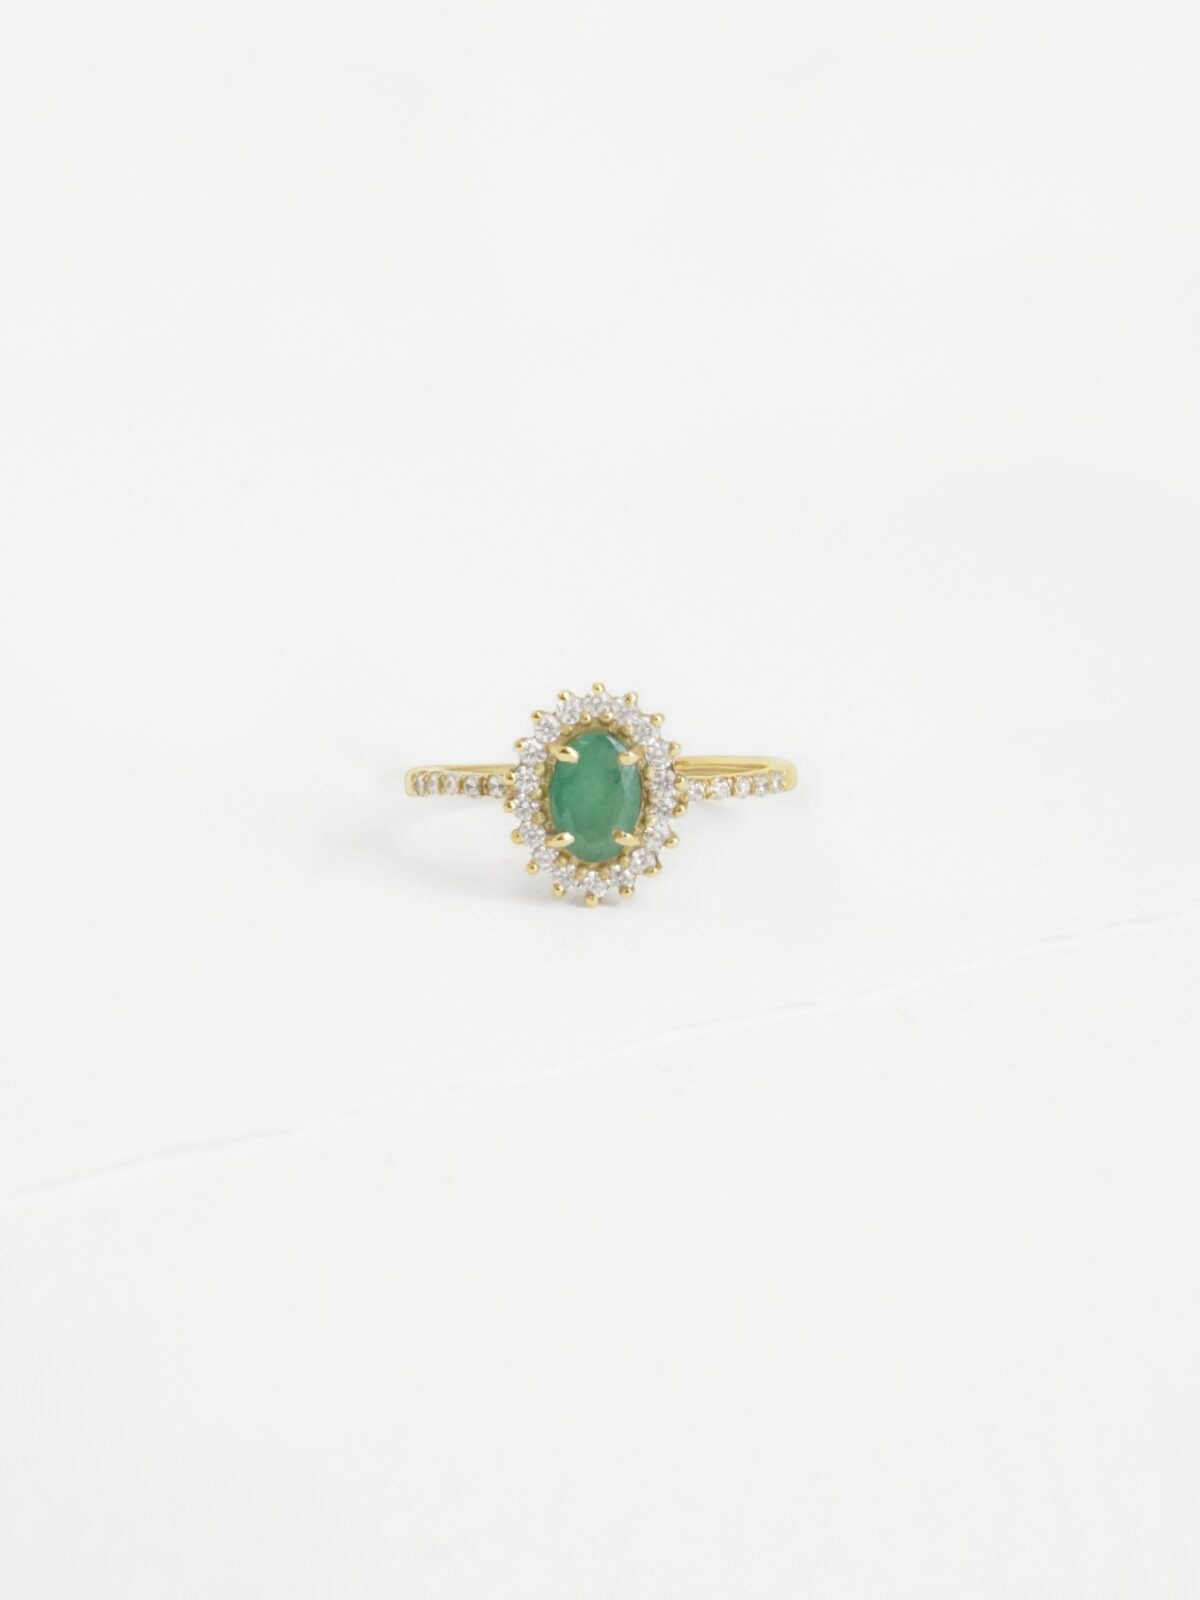 טבעת אמרלד זהב מוקפת זירקונים, טבעת דיאנה אמרלד, טבעת דיאנה זהב, טבעת דיאנה עם אבן חן,